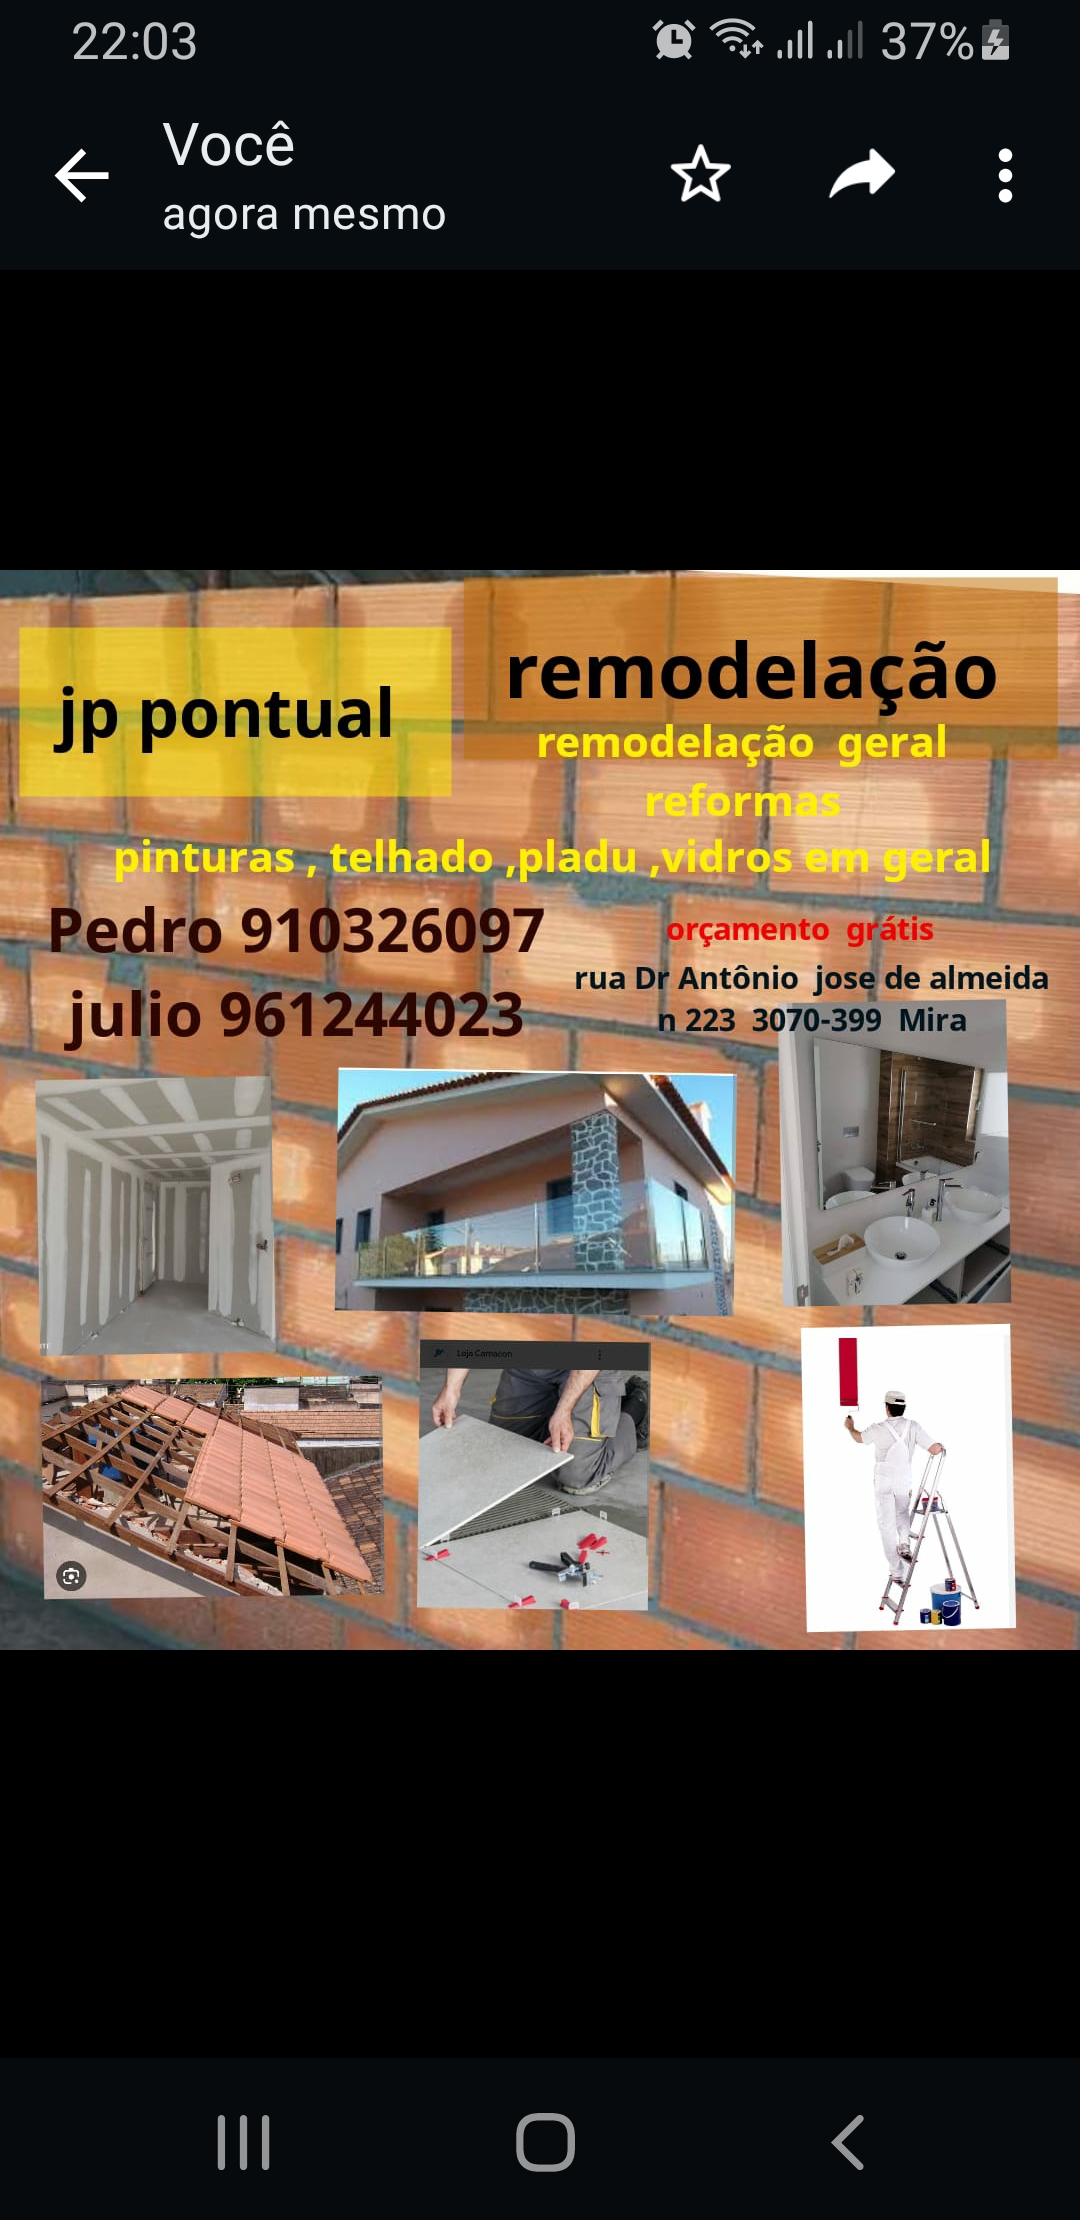 pedro nerlan Lima Pereira - Mira - Instalação de Pavimento em Pedra ou Ladrilho